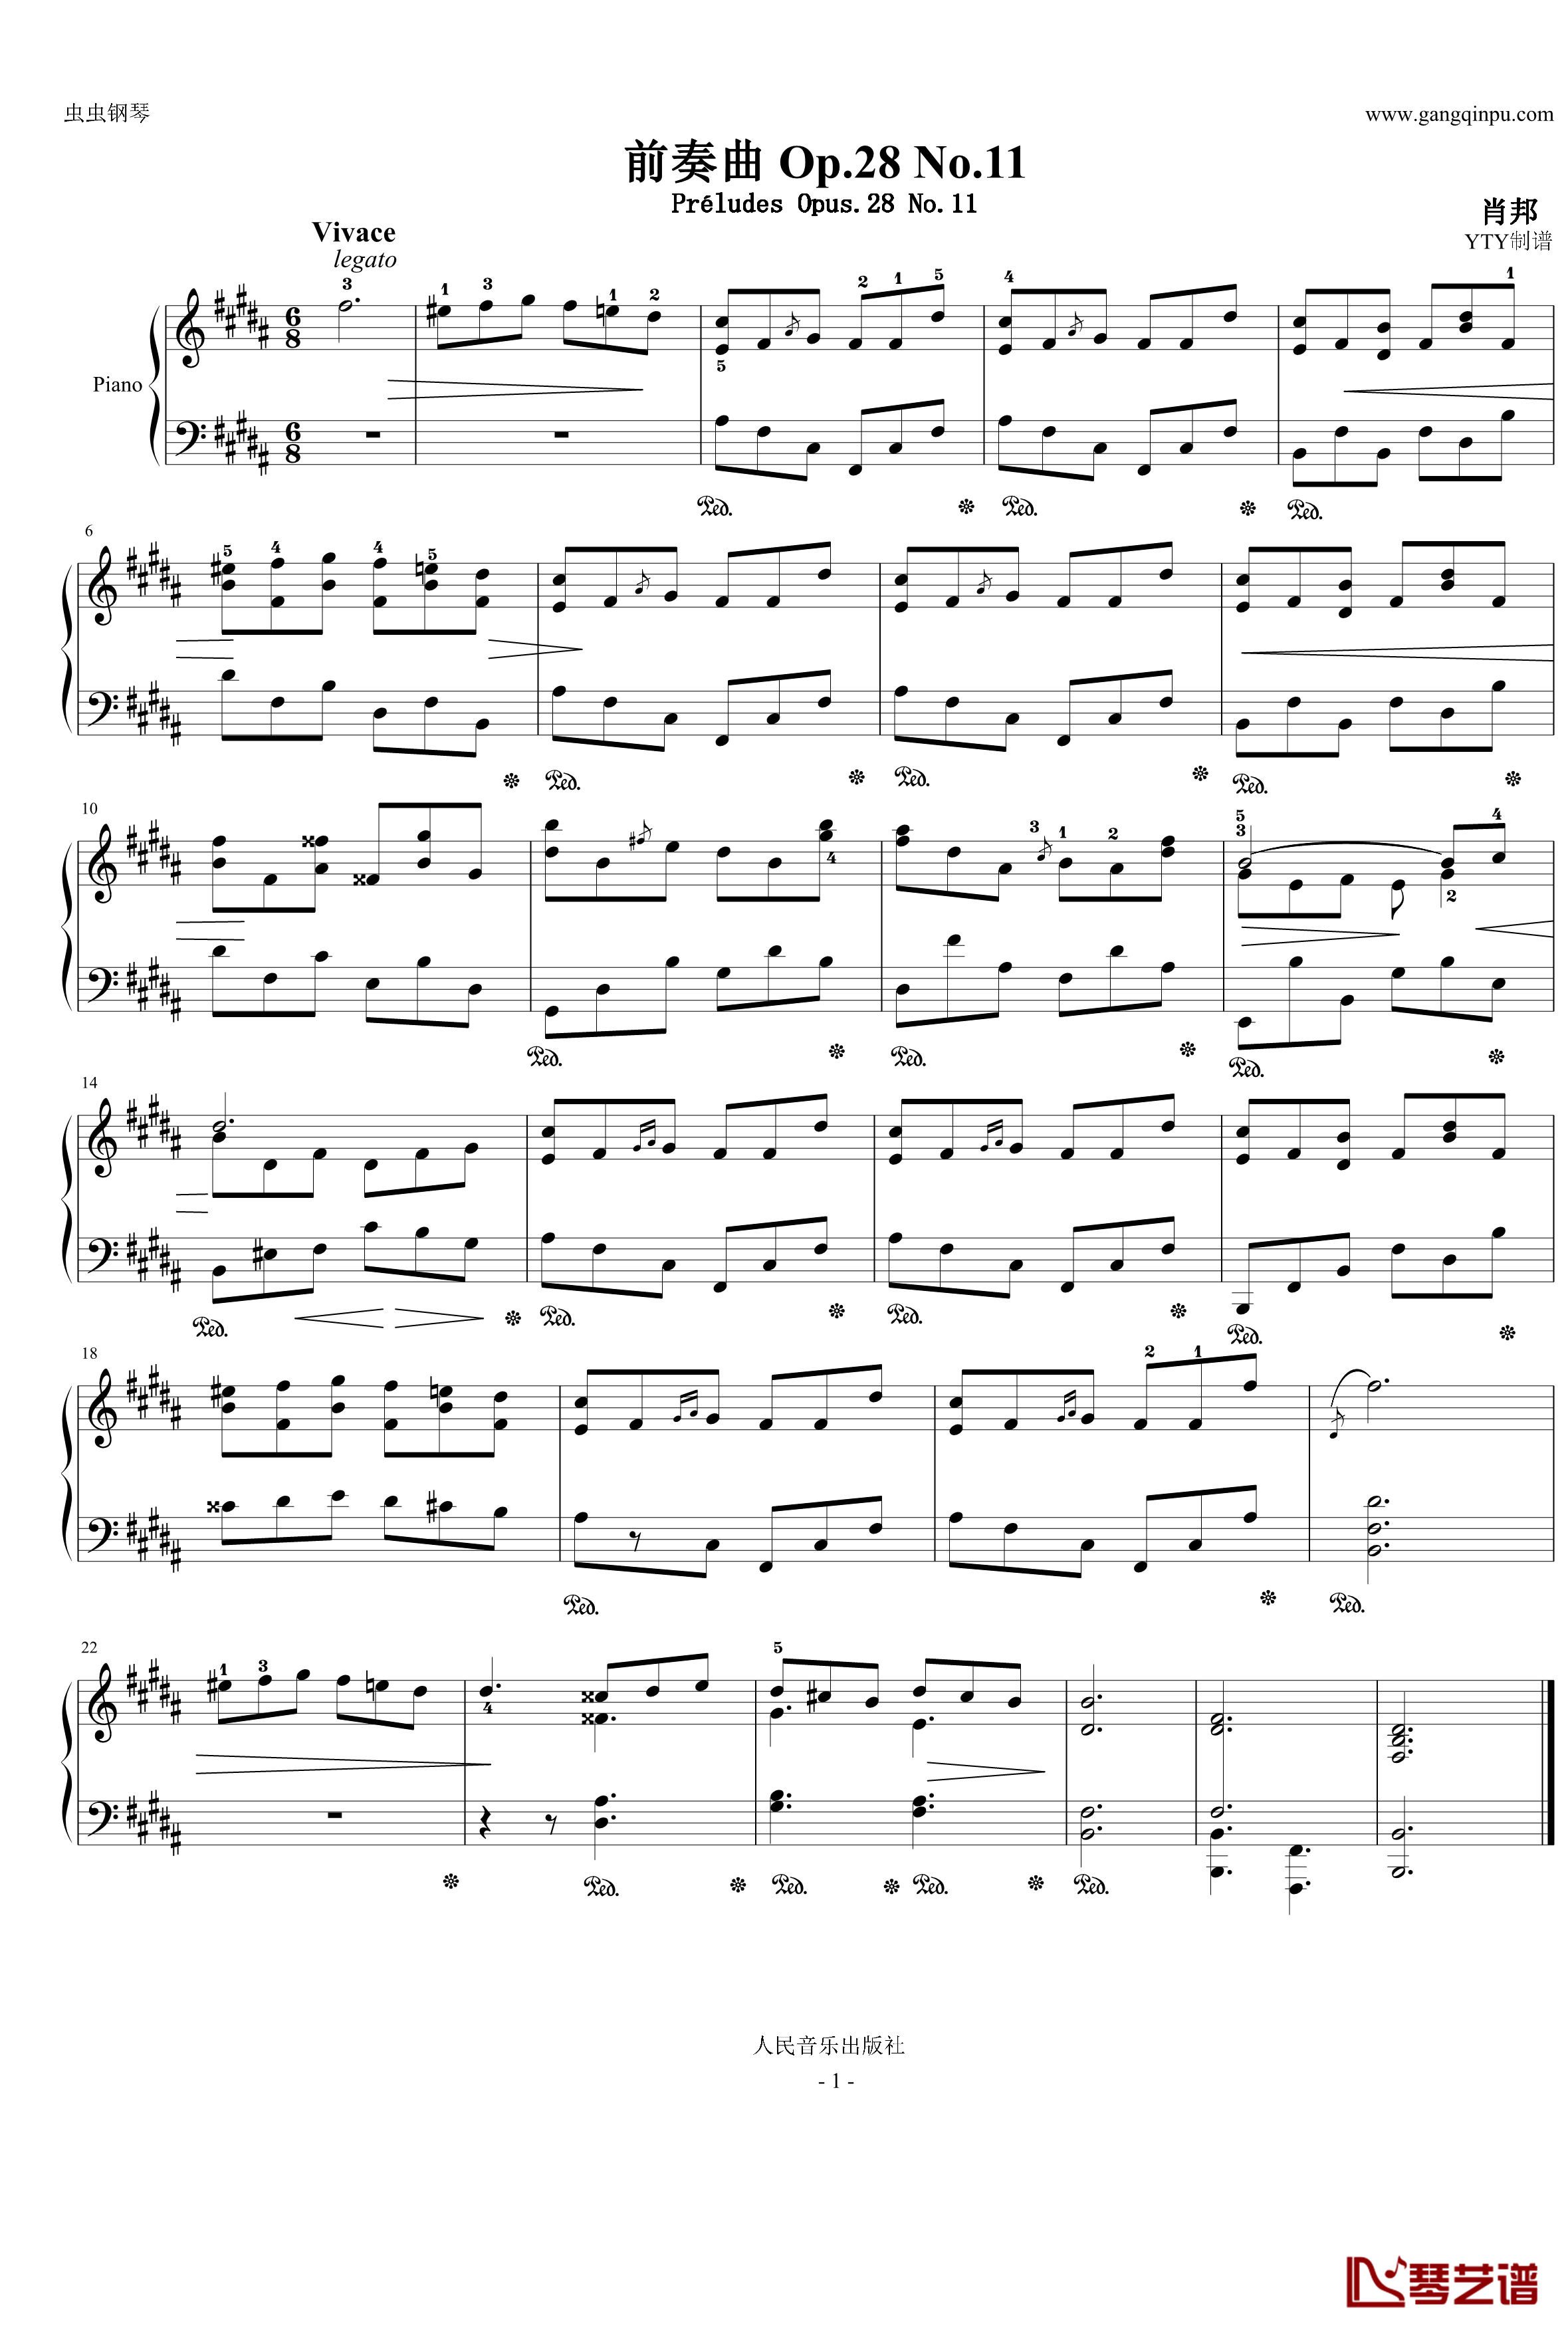  Op.28 No.11 带指法、踏板钢琴谱-B大调前奏曲-肖邦-chopin1